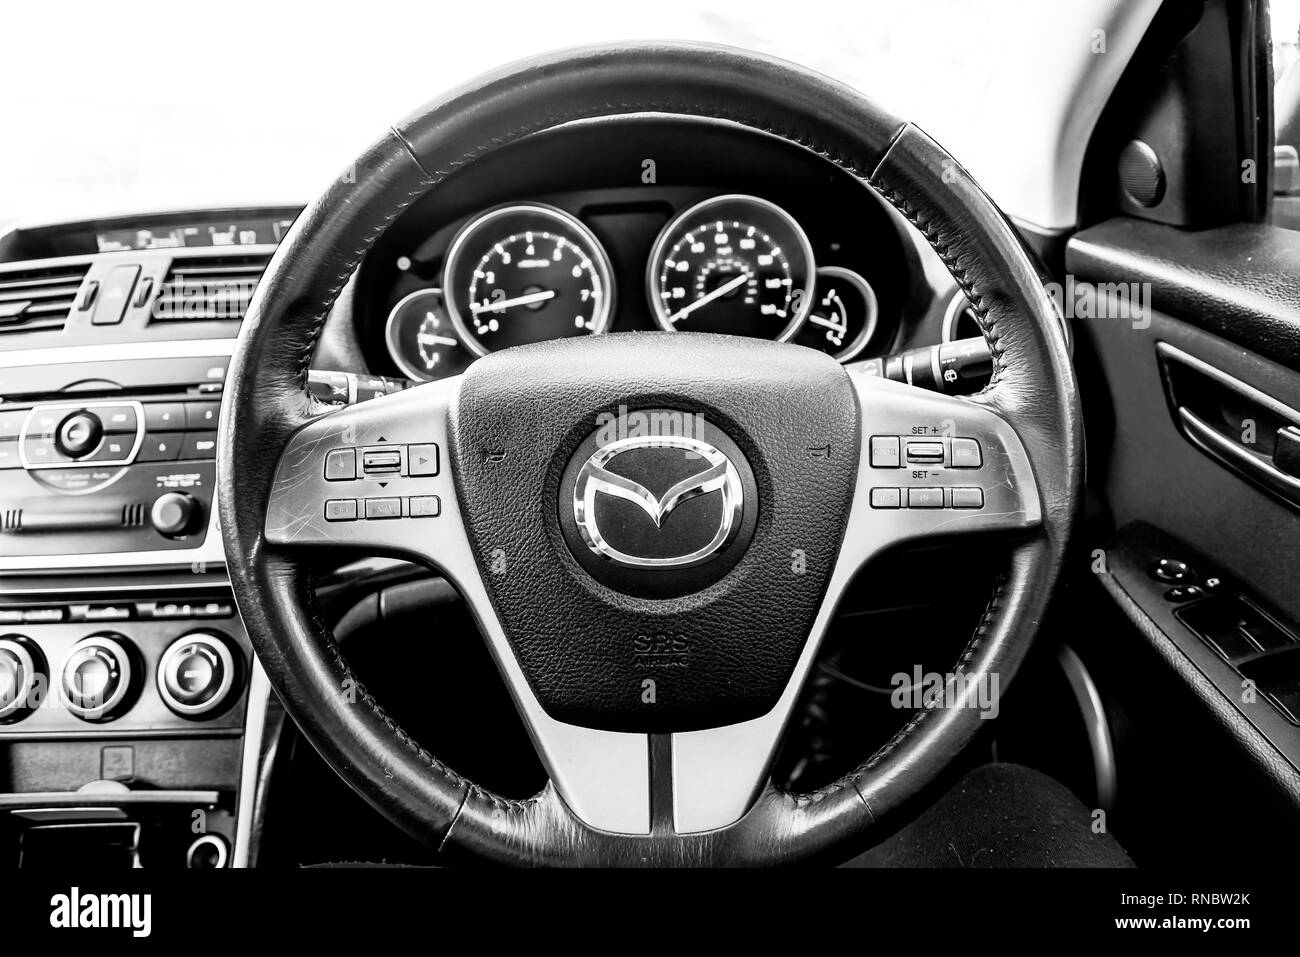 Mazda Lenkrad - Armaturenbrett Zifferblätter - Motordrehzahl und Tachometer  Stockfotografie - Alamy